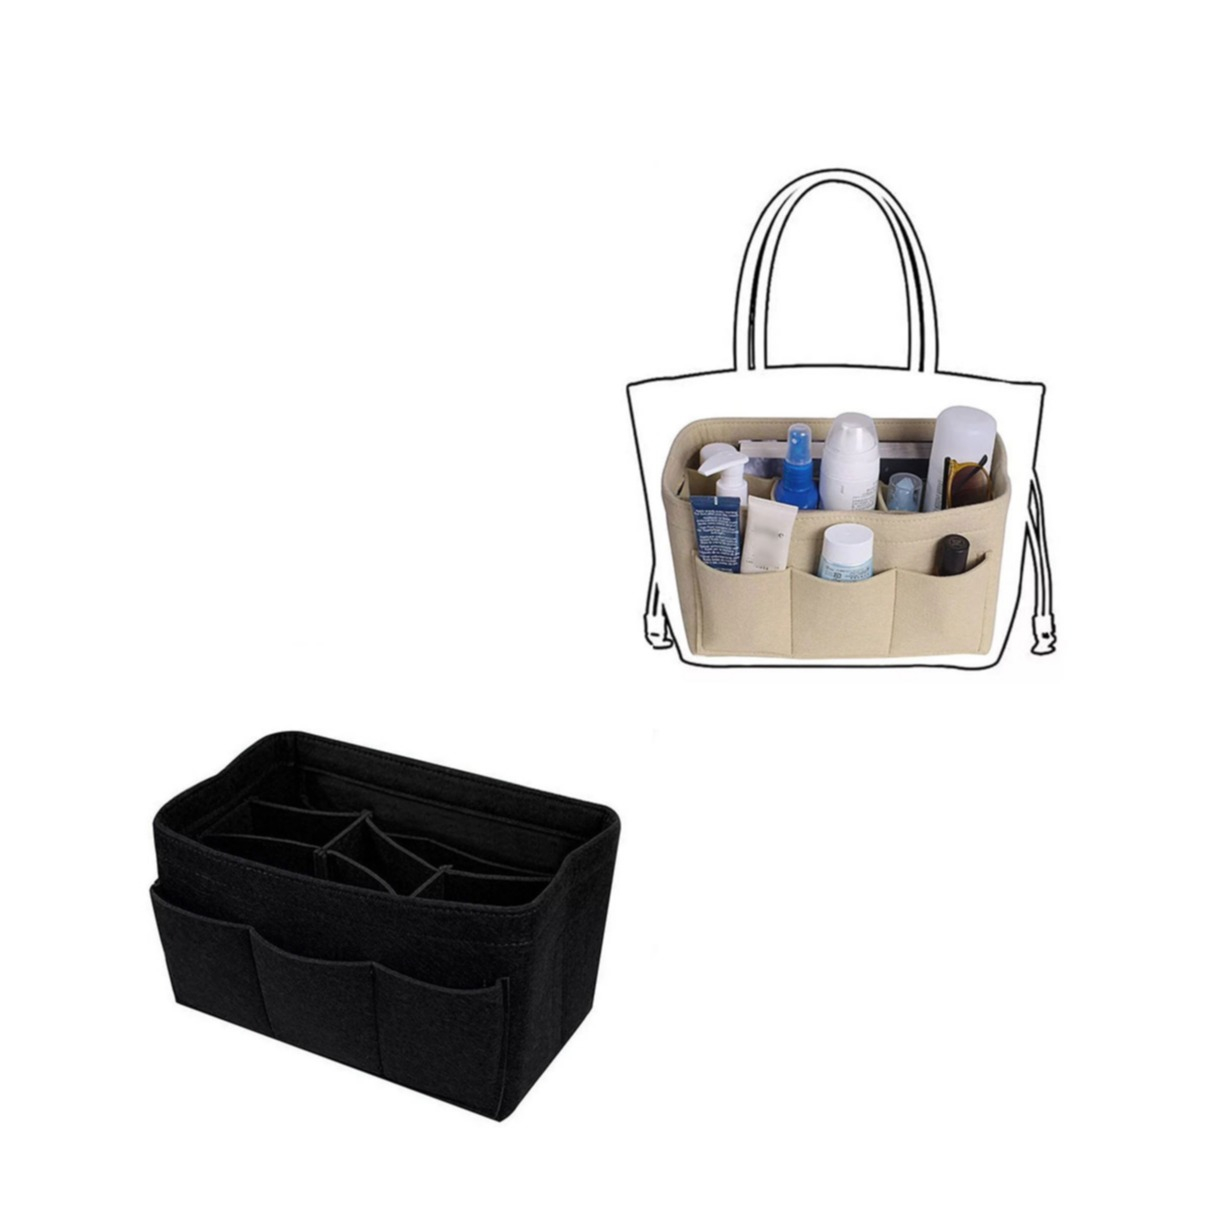 Xcase Handtaschenorganizer: Handtaschen-Organizer, RFID-Schutz, 13 Fächer,  26 x 16 x 8 cm, schwarz (Handtaschen Organizer klein)